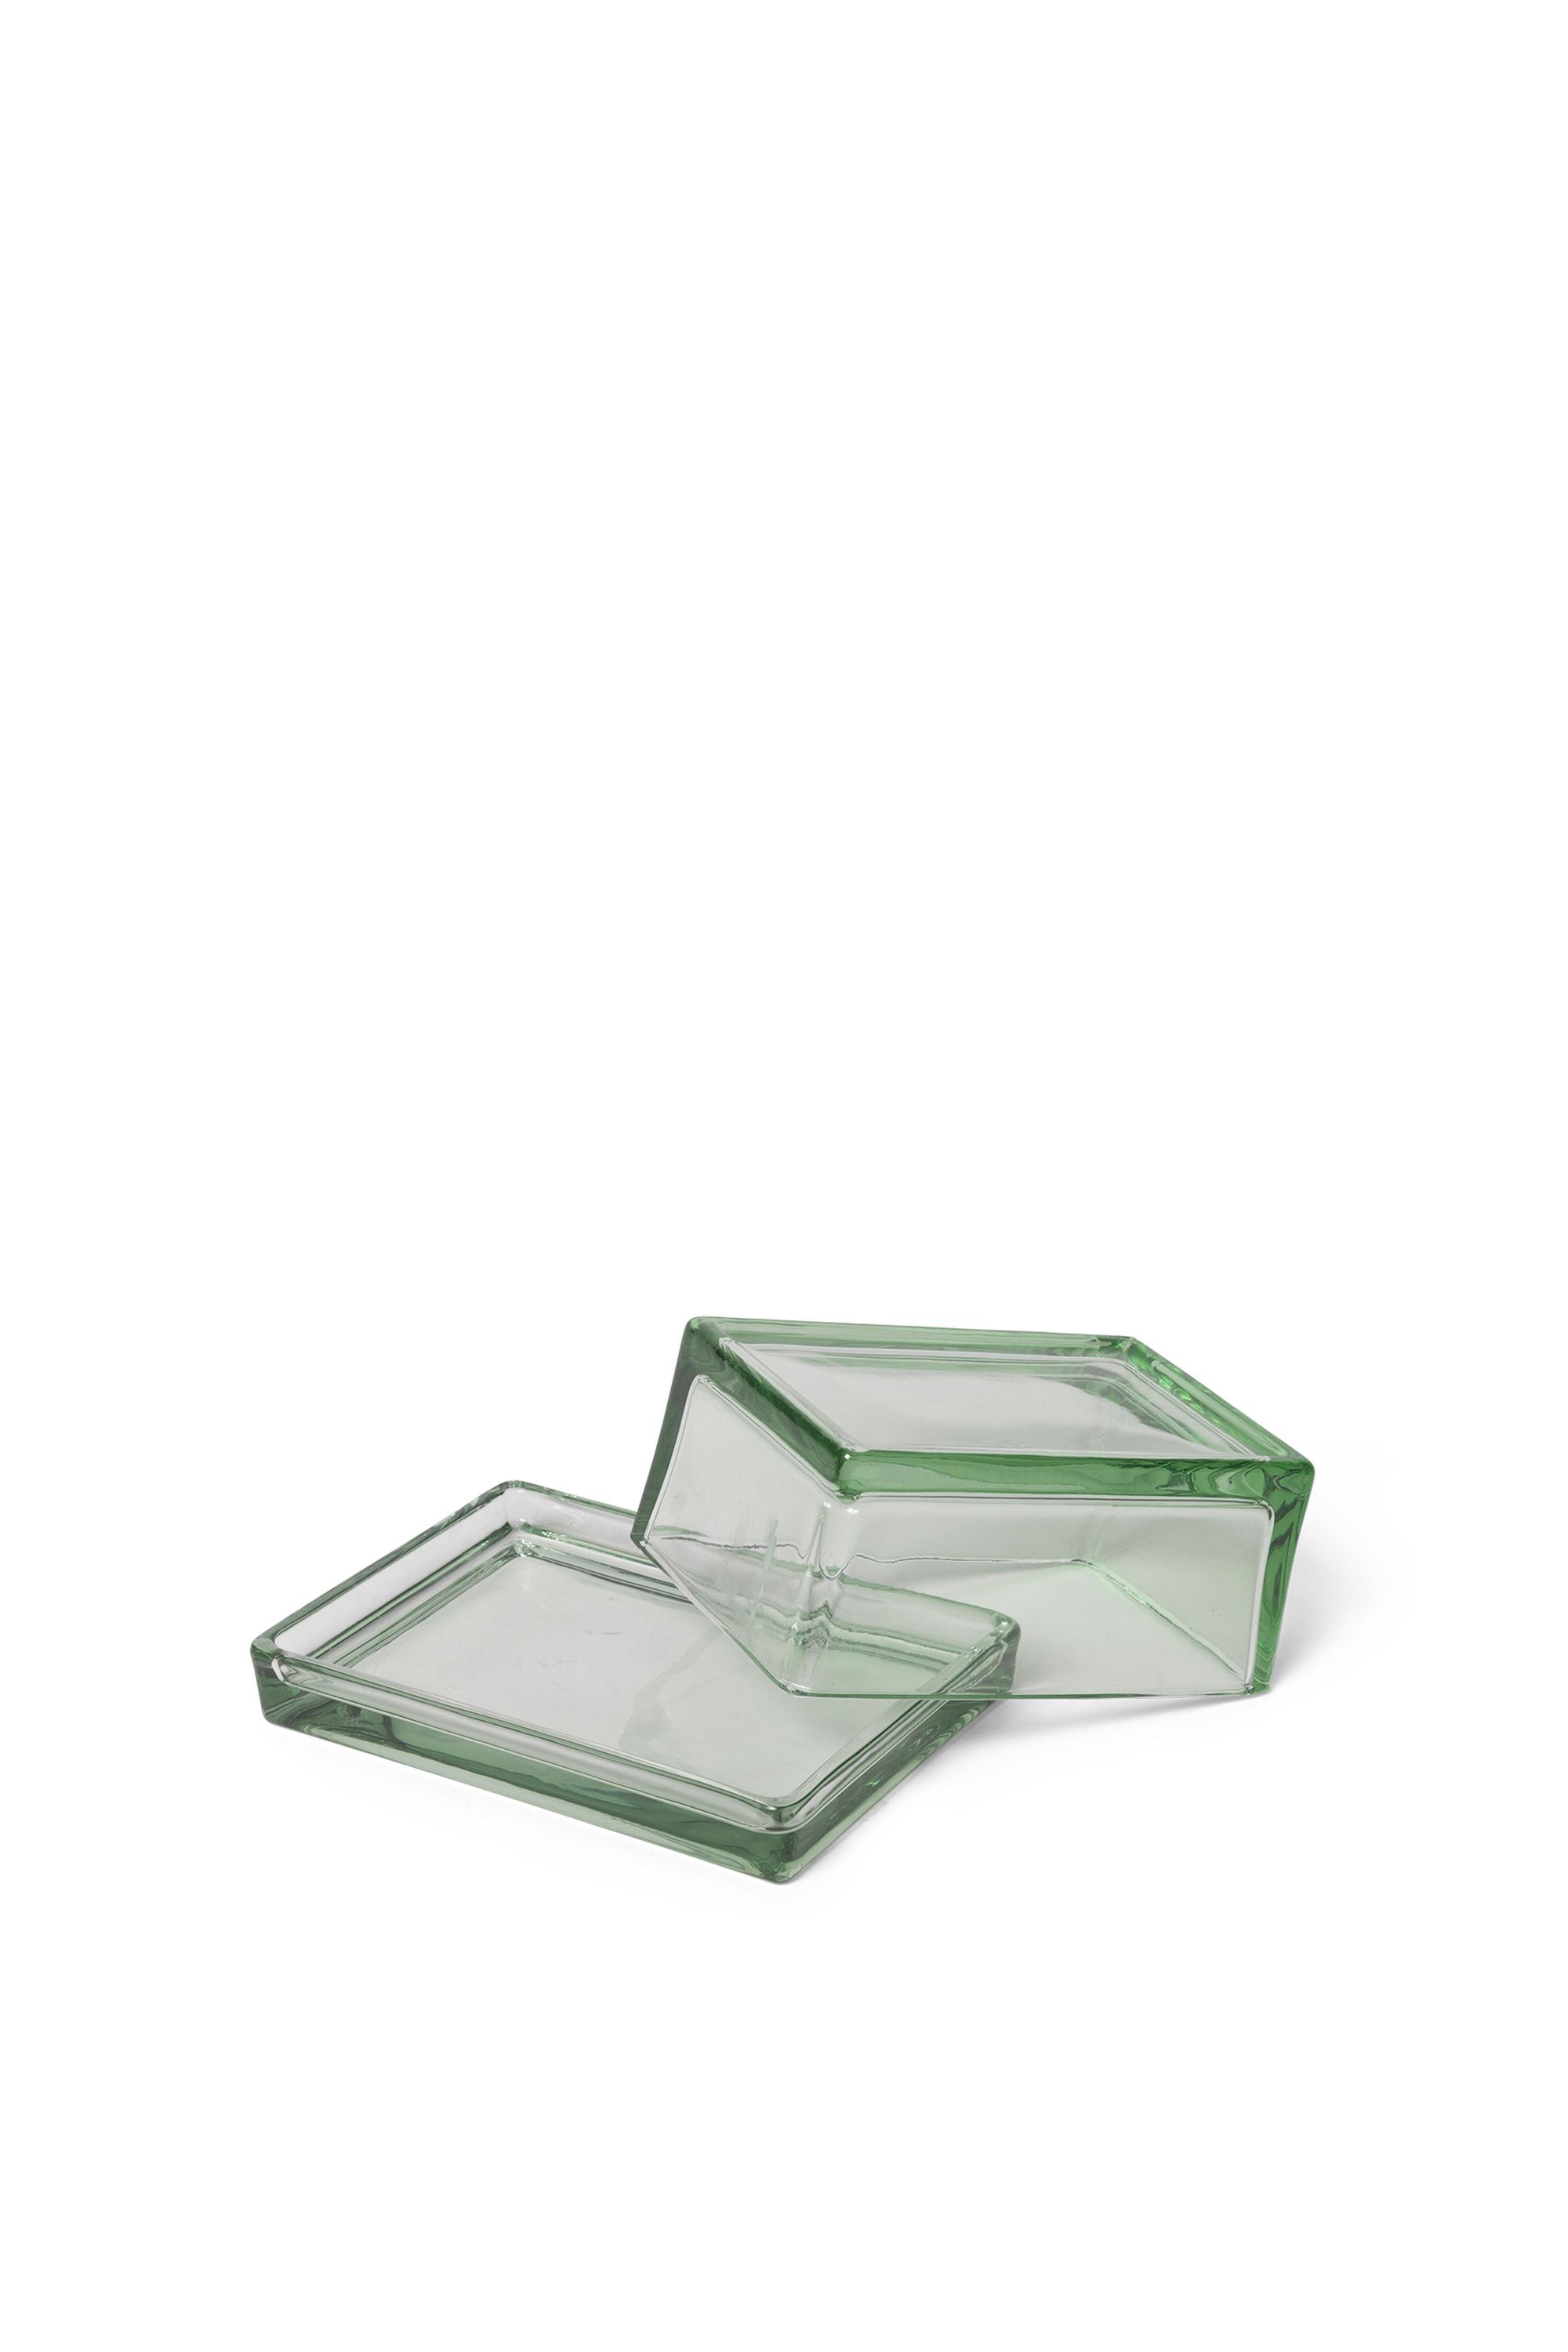 Caja de Ferm Living Oli, reciclado transparente